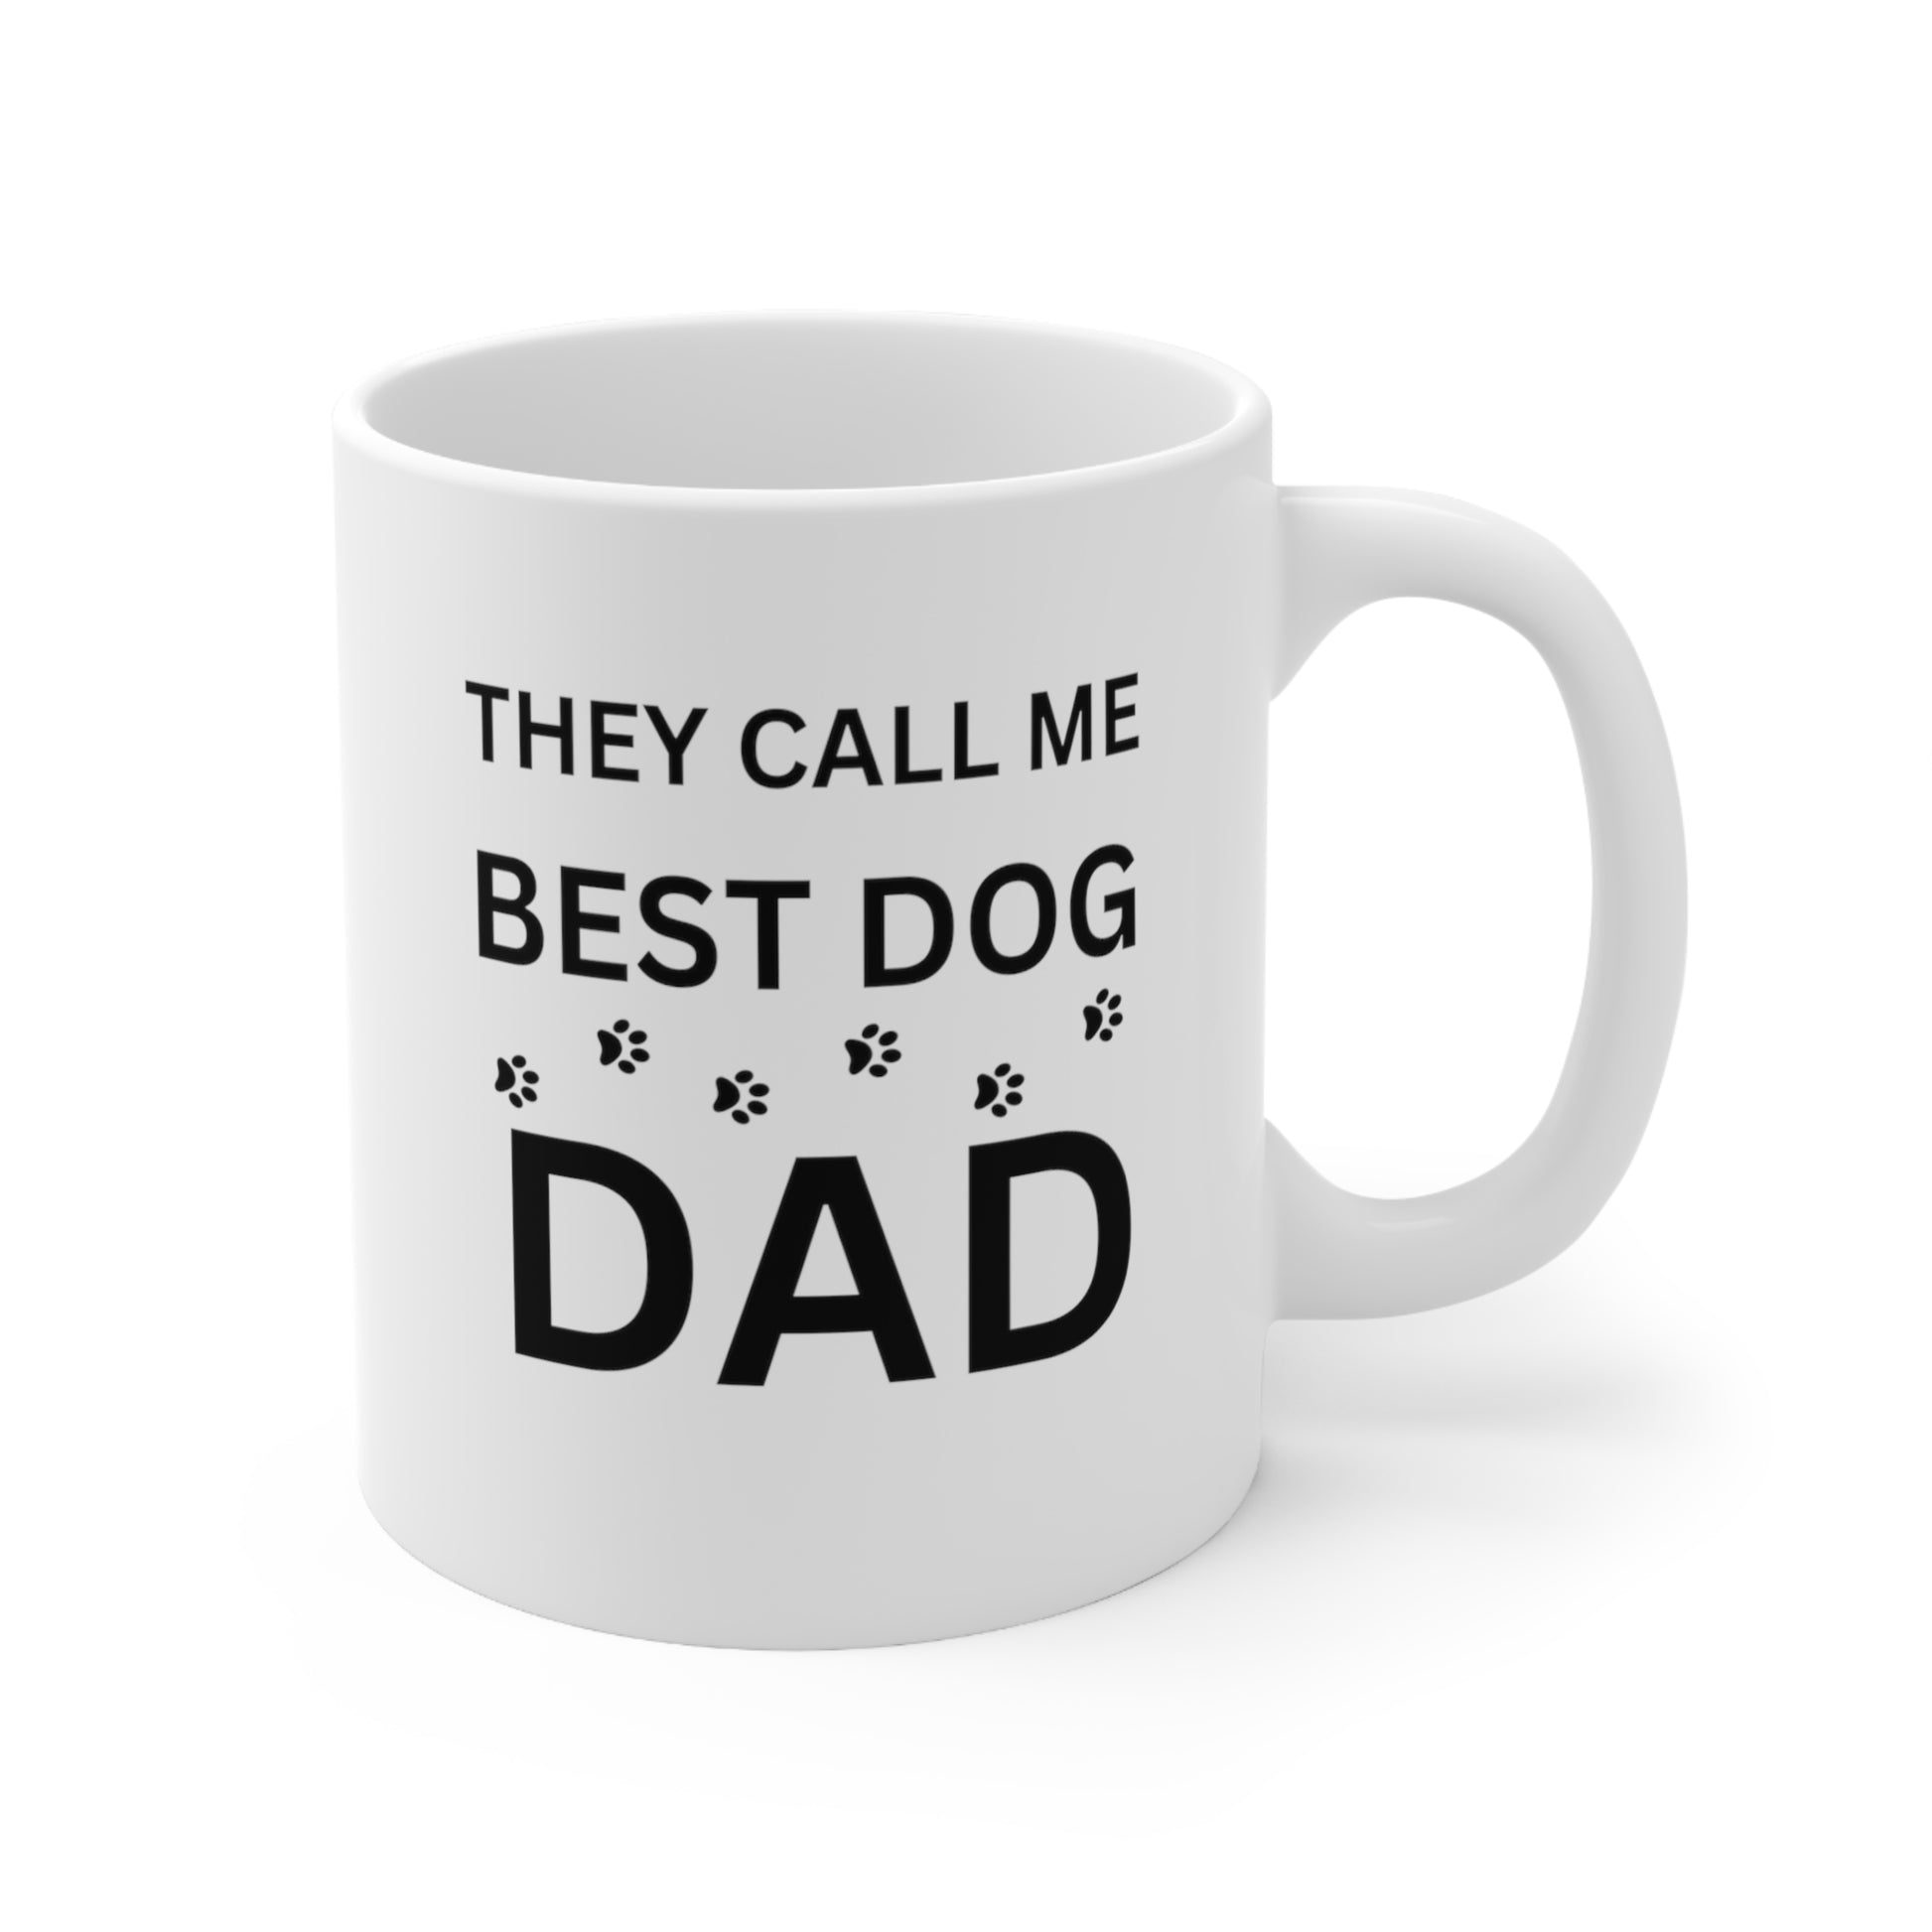 Funny Dog Dad Mug - They Call Me Best Dog Dad Mug 11oz